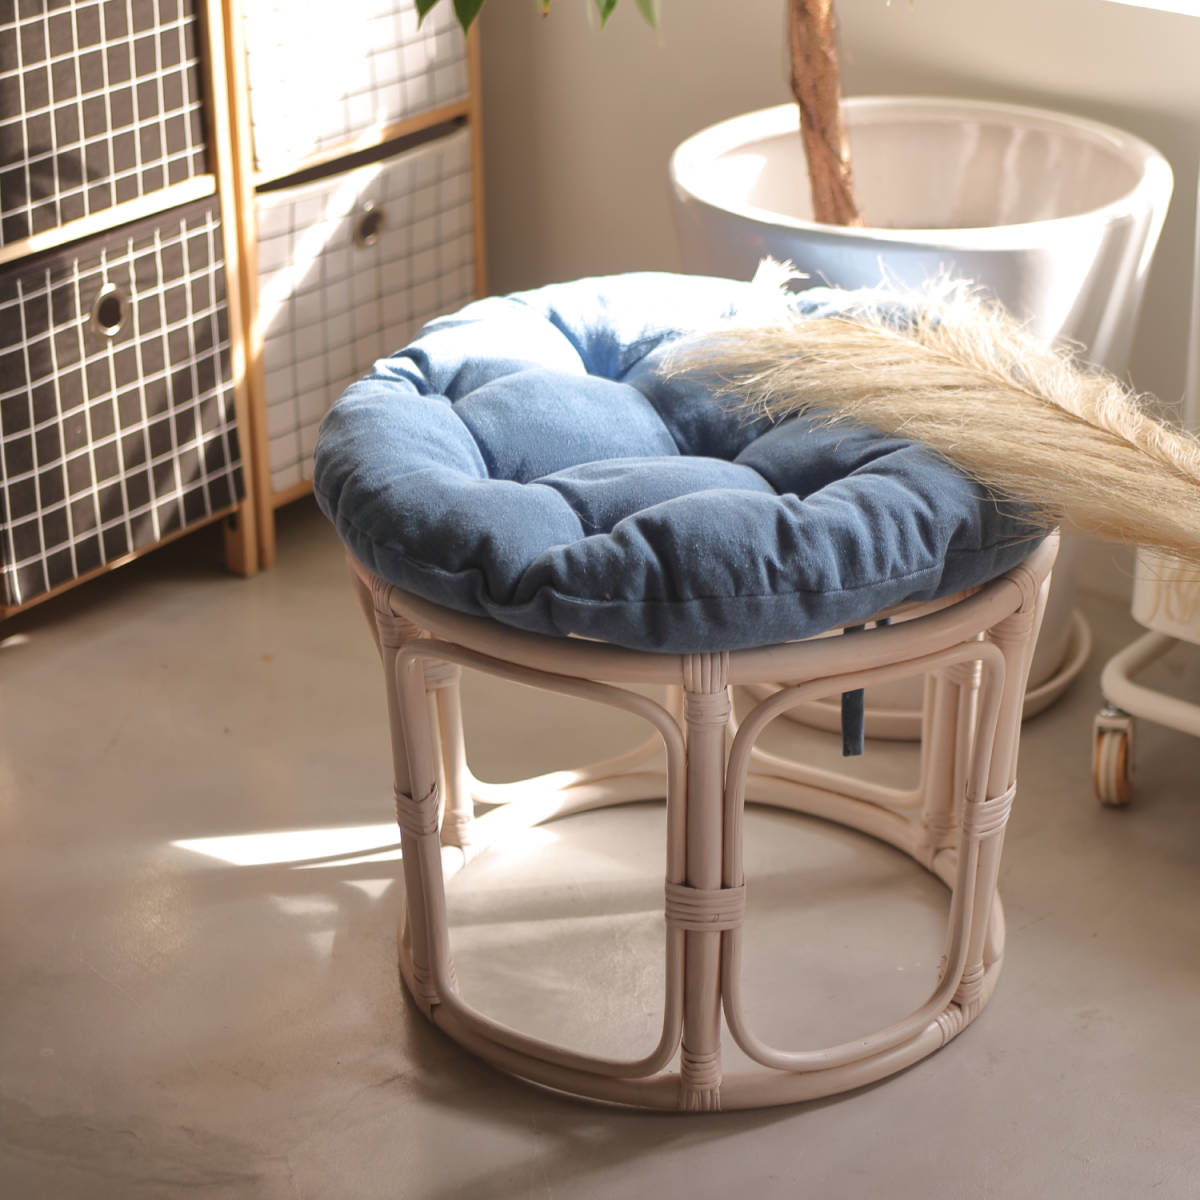 現品限り 天然木 クッション 高級 ラタン スツール 白 藤 丸椅子 木製 チェア 座椅子 イス アンティーク ビンテージ家具 ガーデンチェア